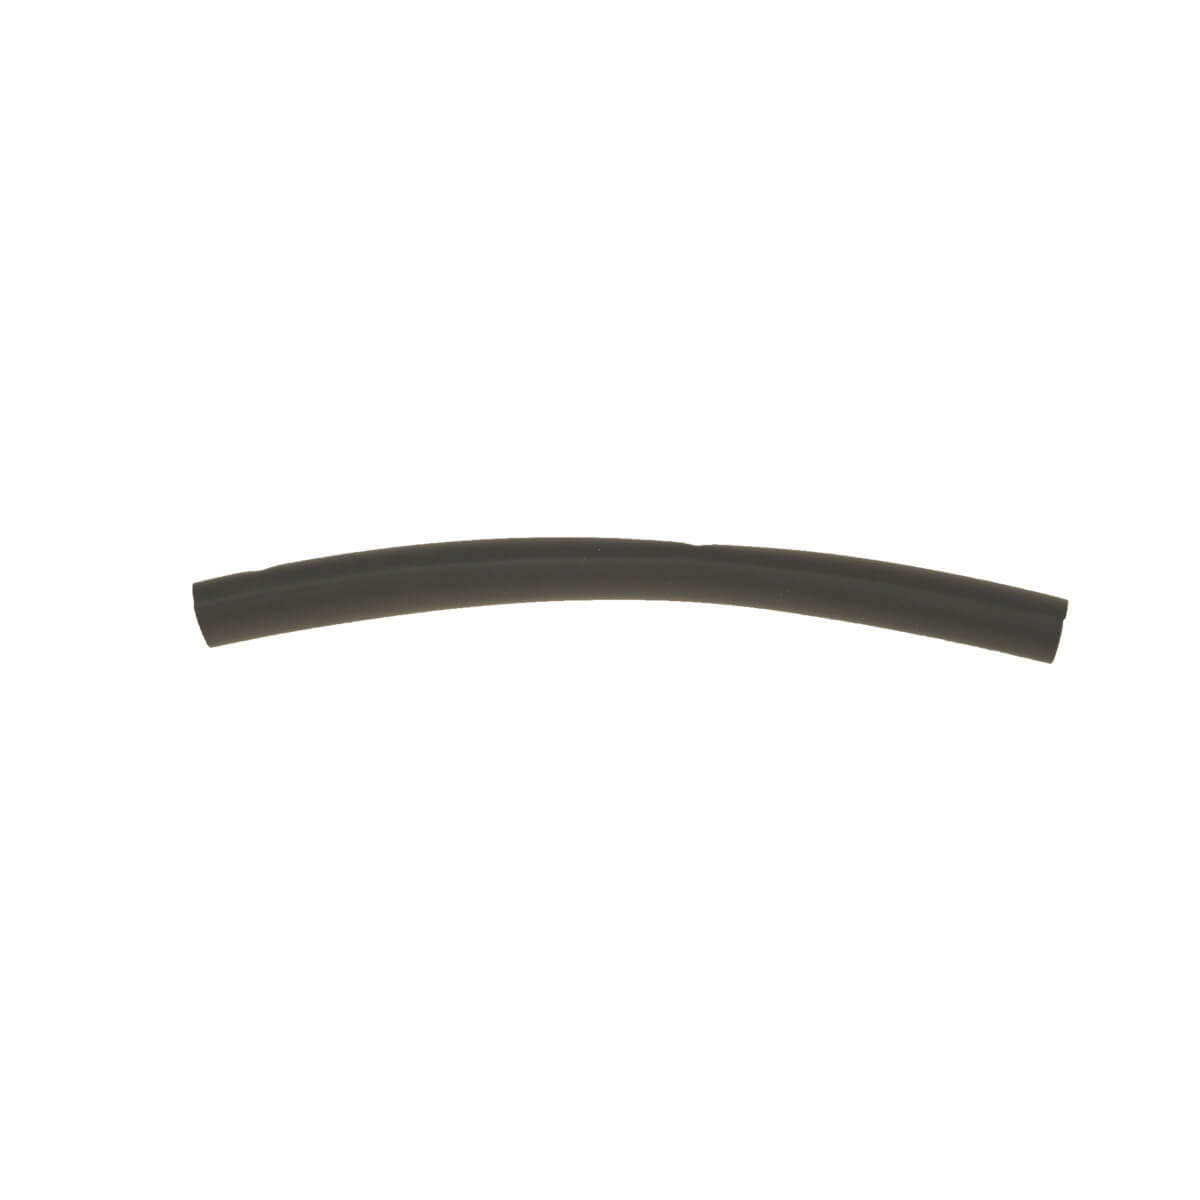 Heatshrink Tubing - Black - 0.375 x 5 - 6 Pack